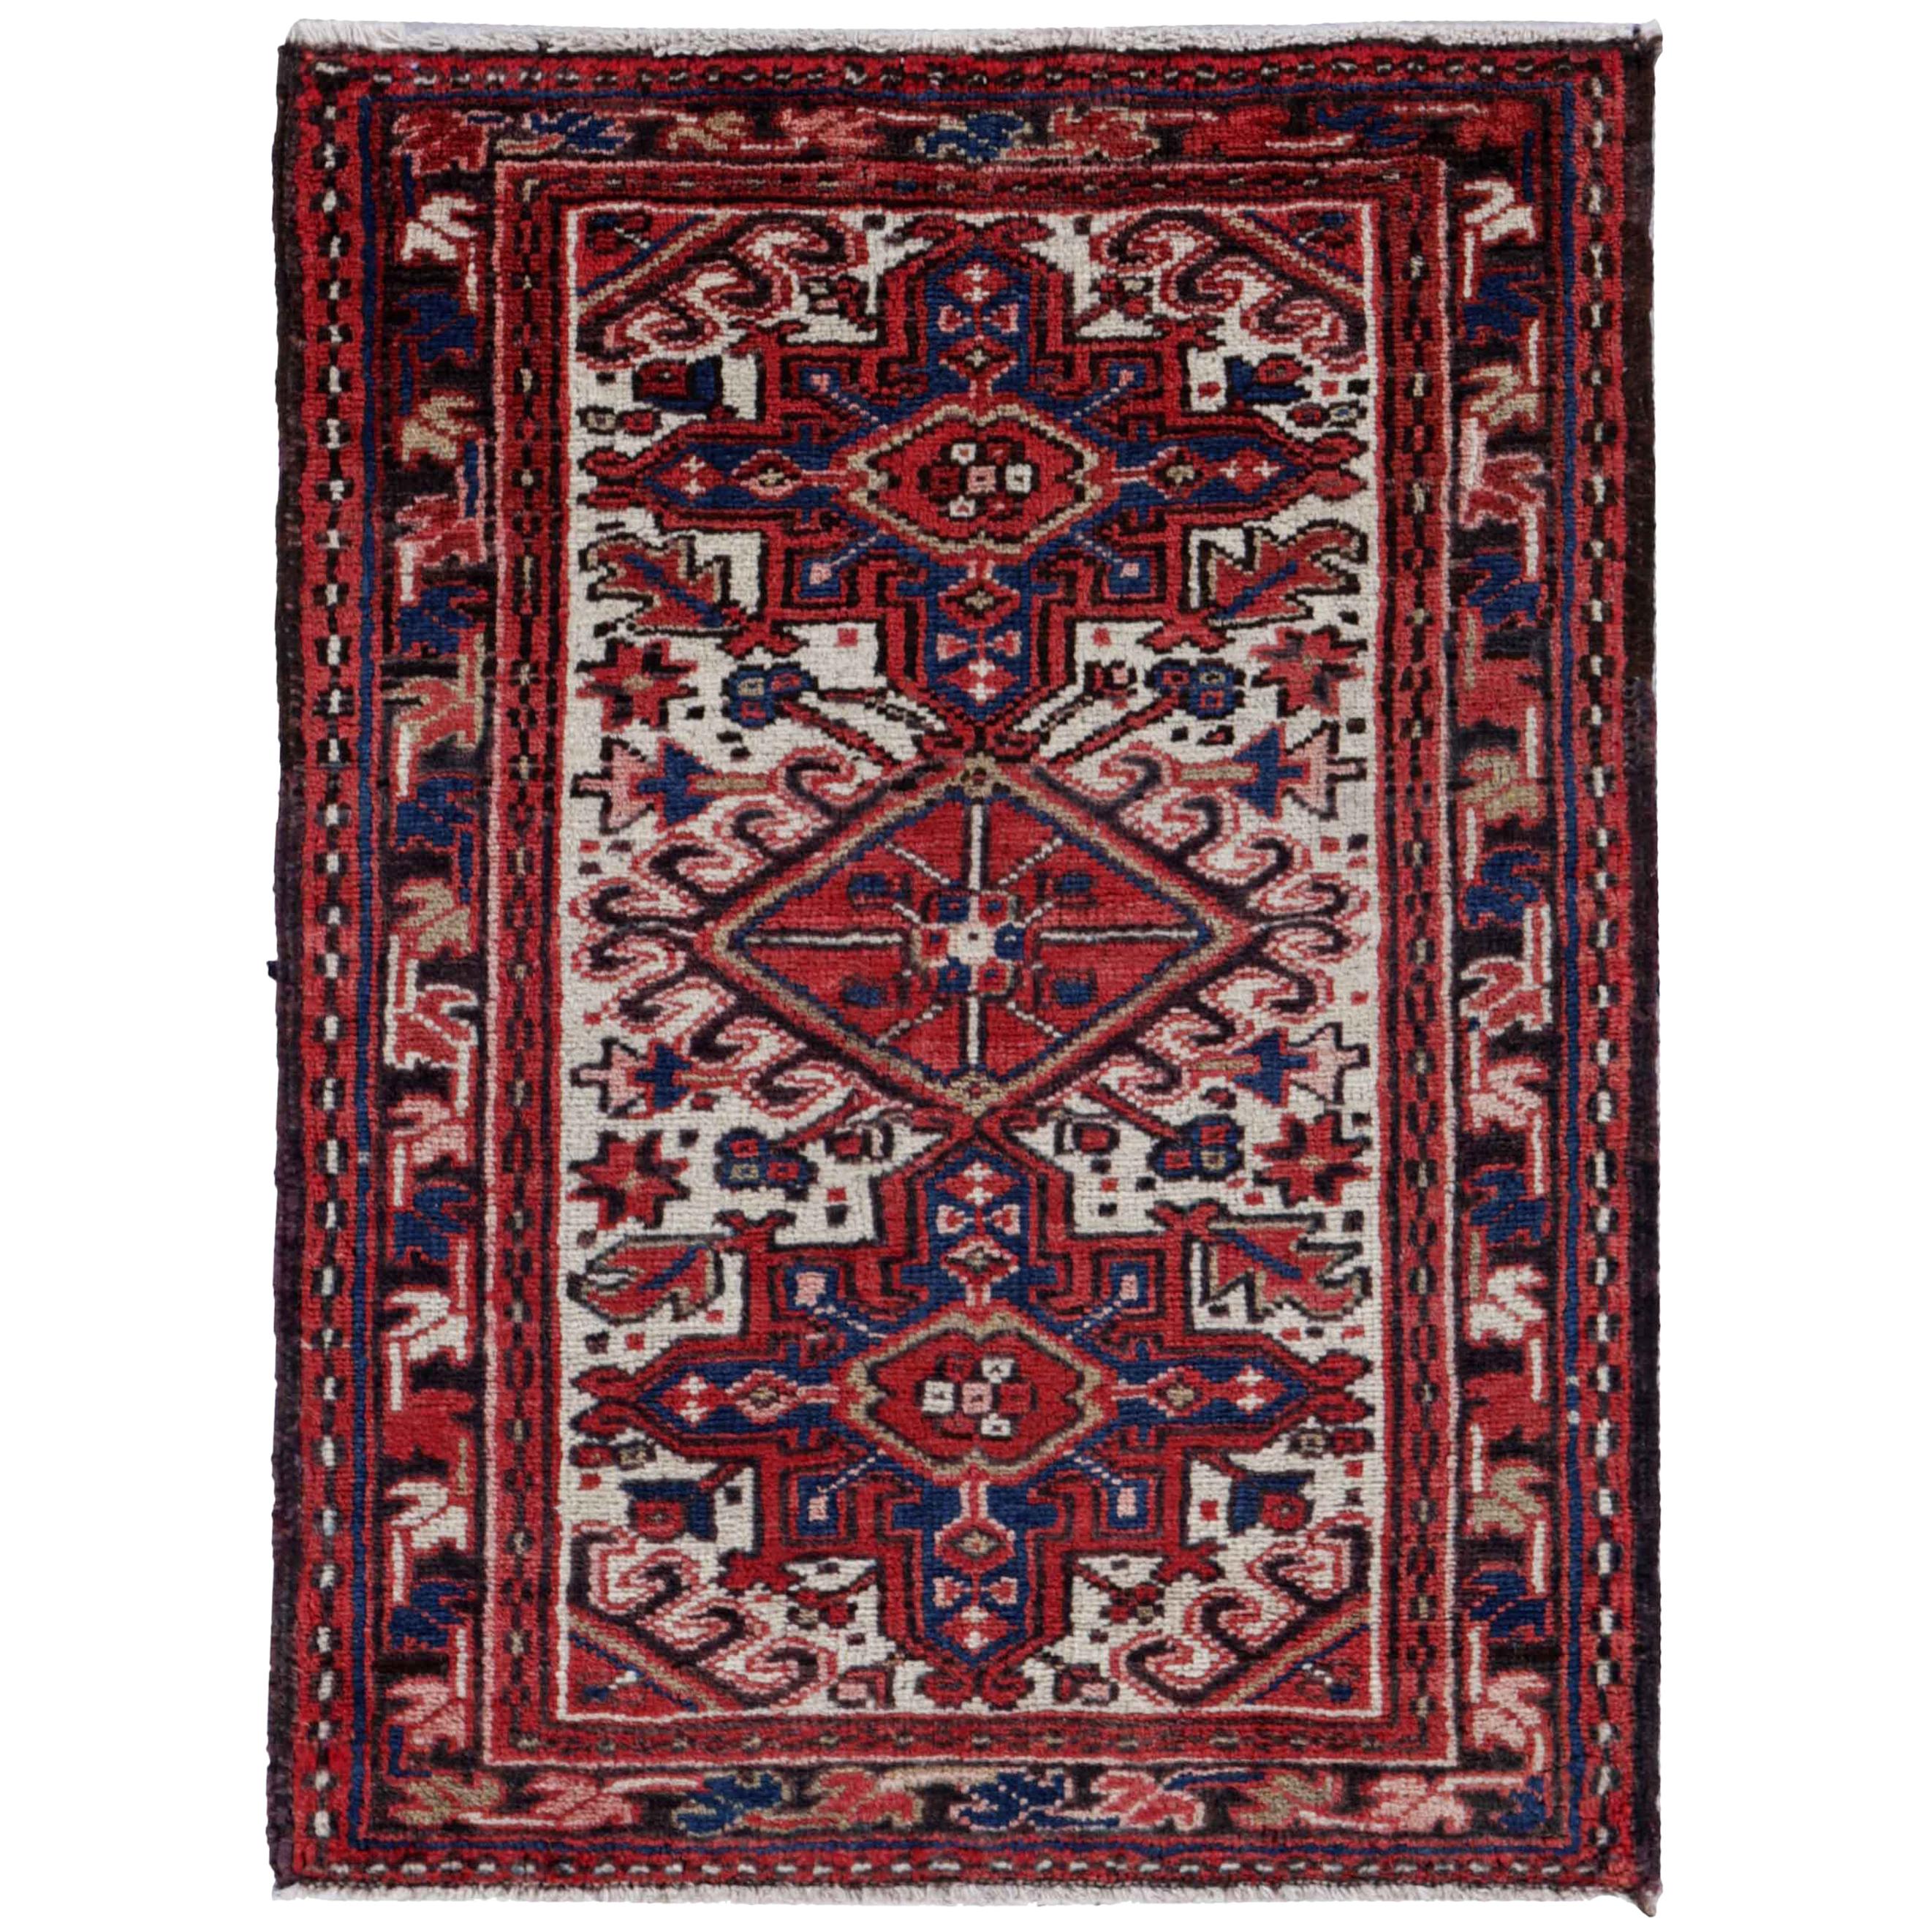 Antique Persian Square Rug Heriz Design